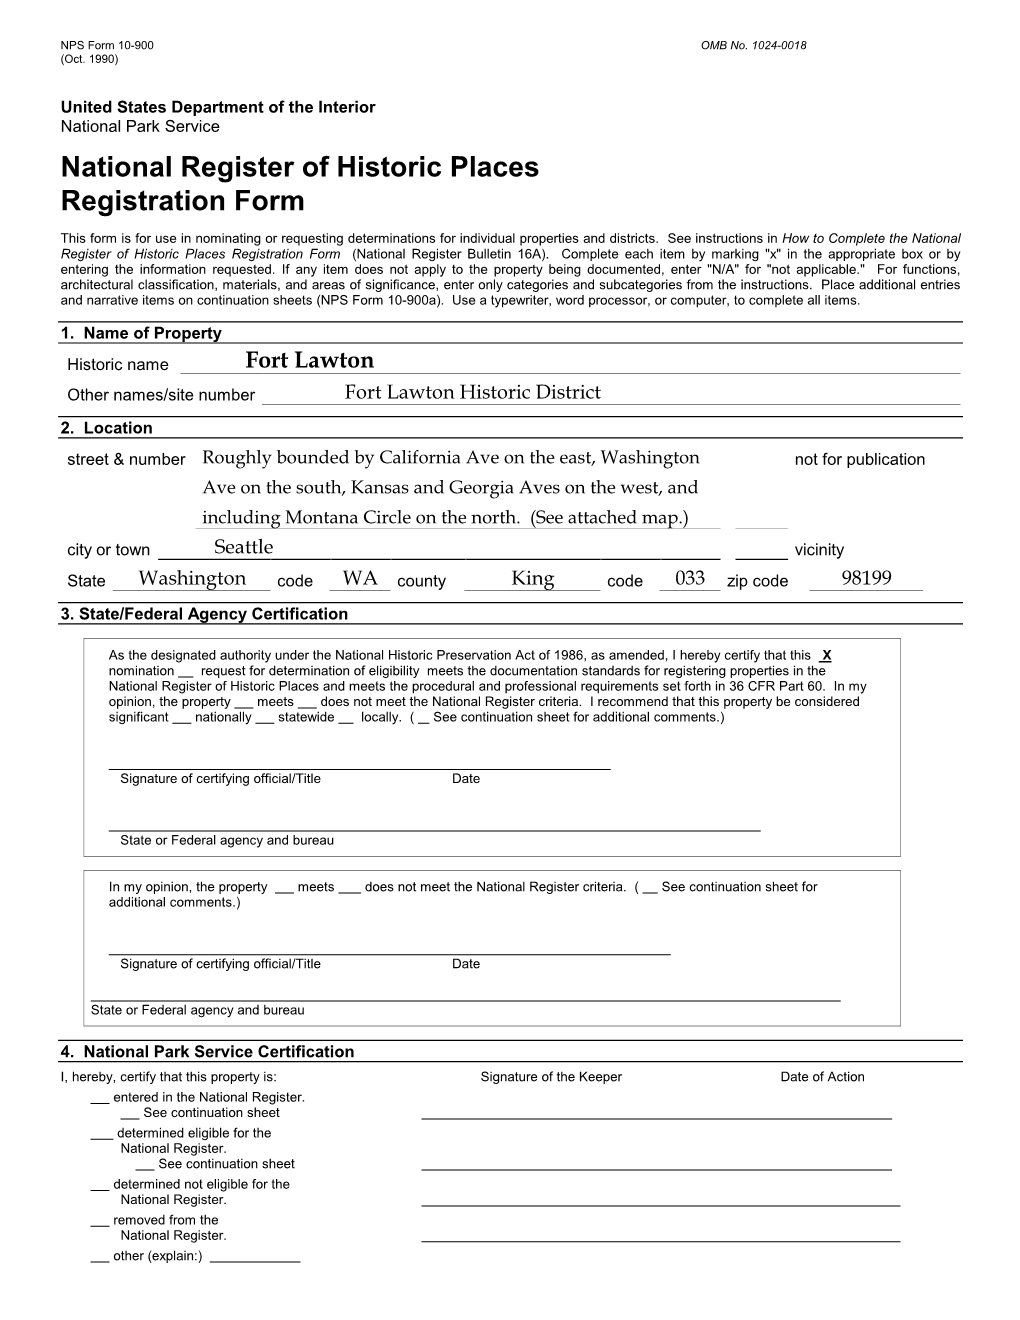 Fort Lawton National Register Nomination